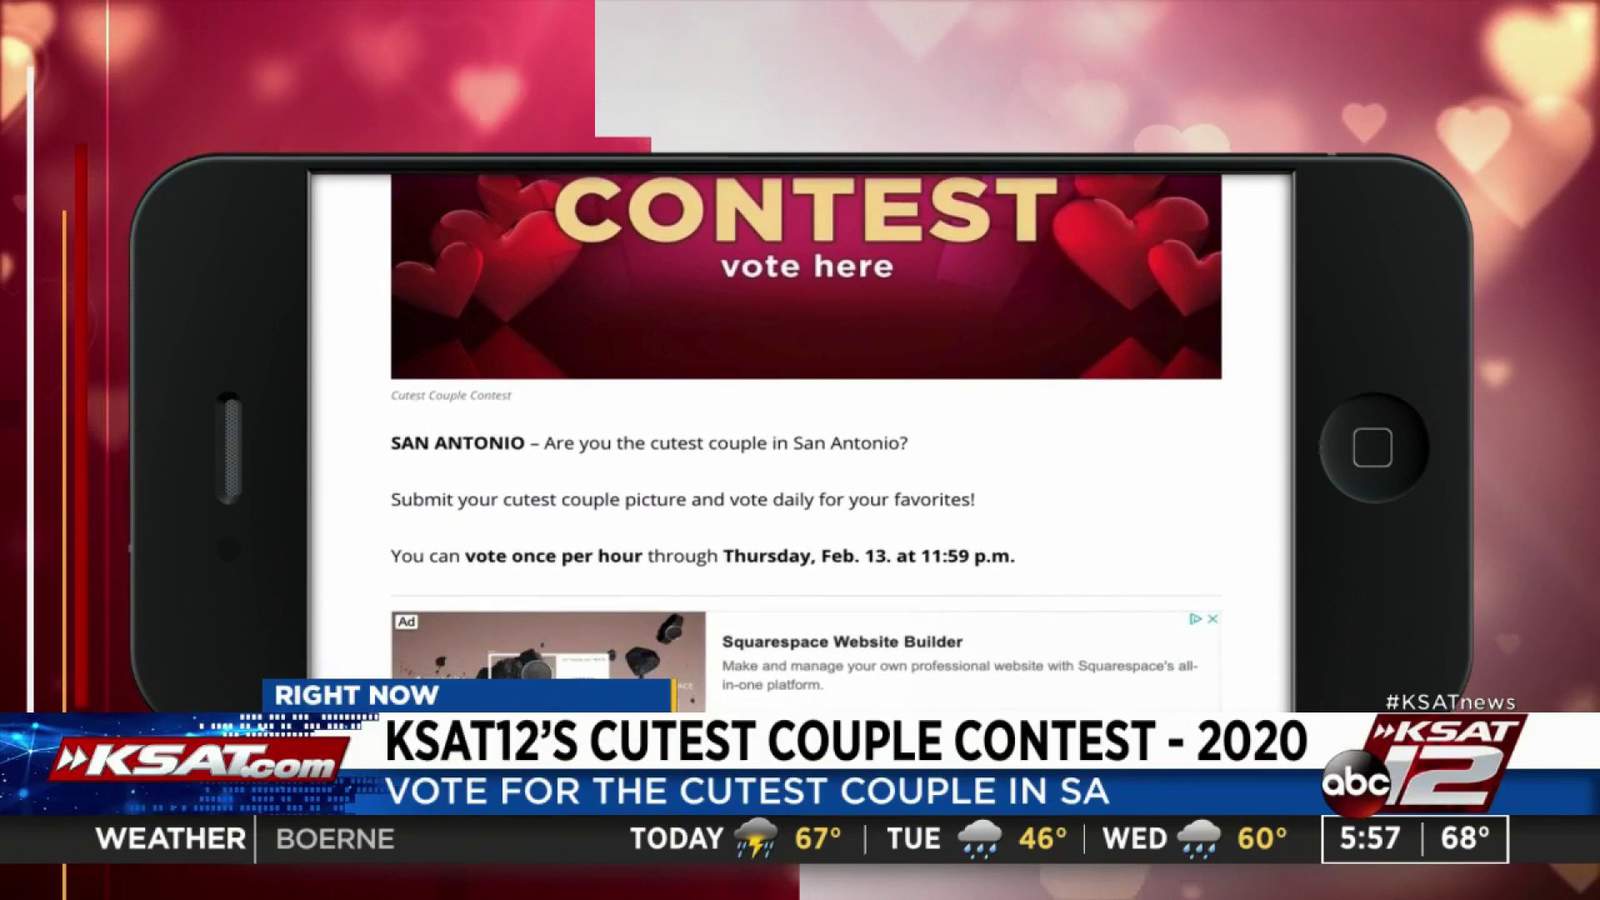 KSAT12's Cutest Couple Contest